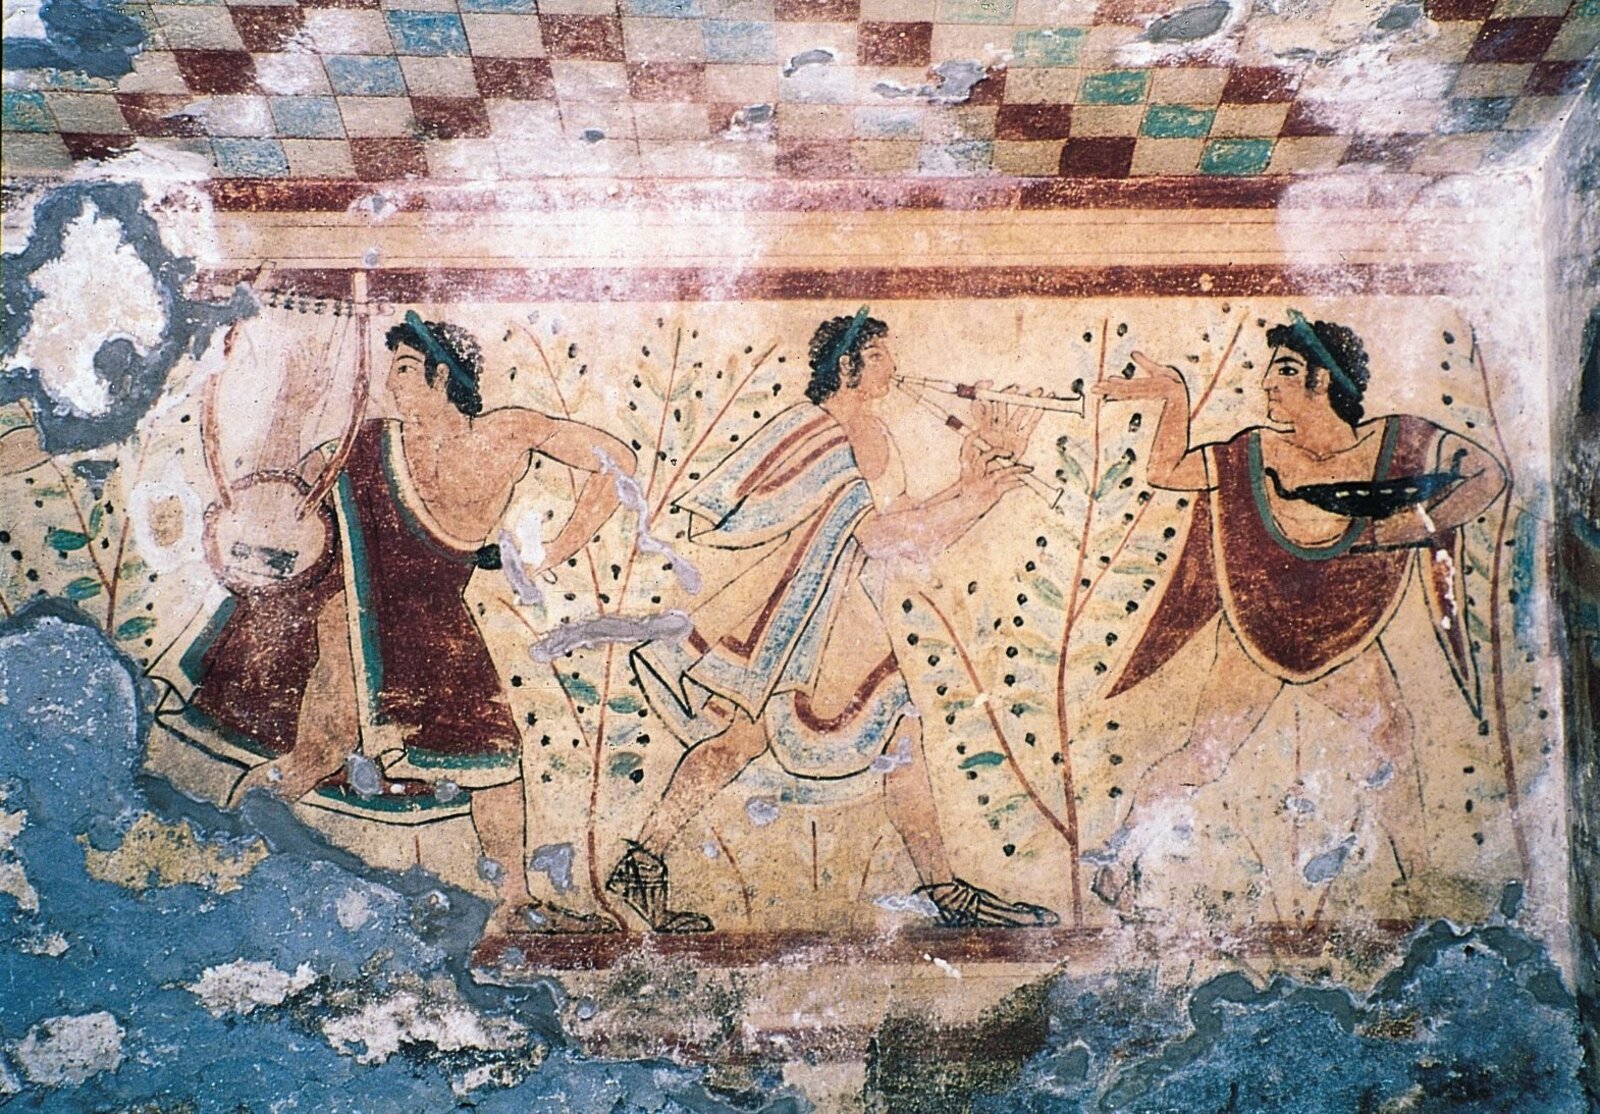 Фрески Древней Греции